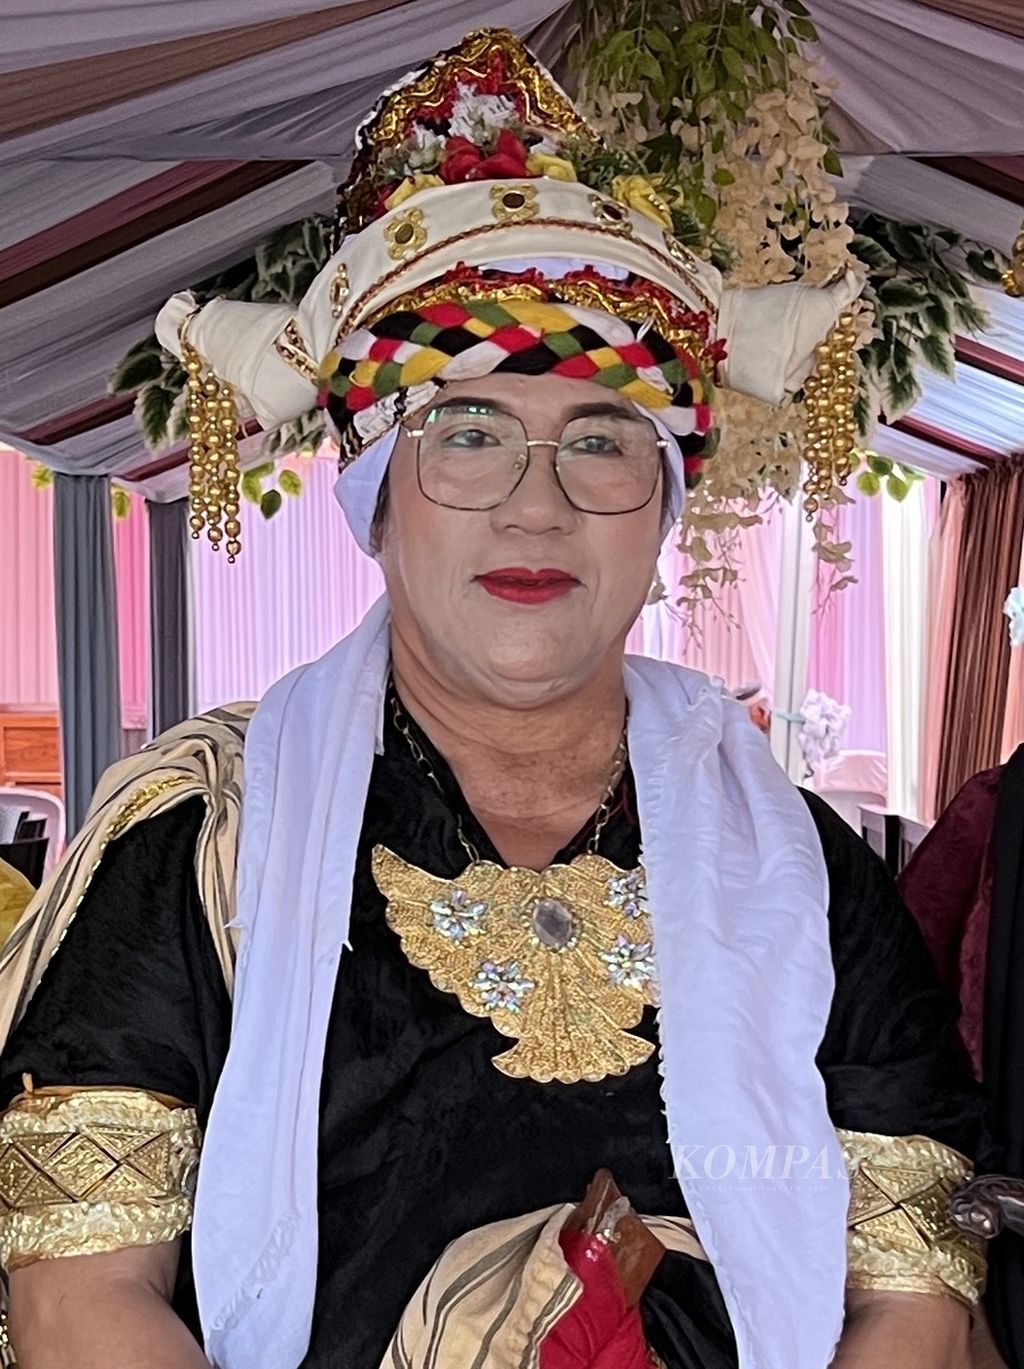 Puang Matoa Bussu Ancu dalam pakaian kebesaran bissu bersiap memimpin ritual pernikahan anak seorang bangsawan di Soppeng, Sulawesi Selatan, Minggu (17/7/2022).